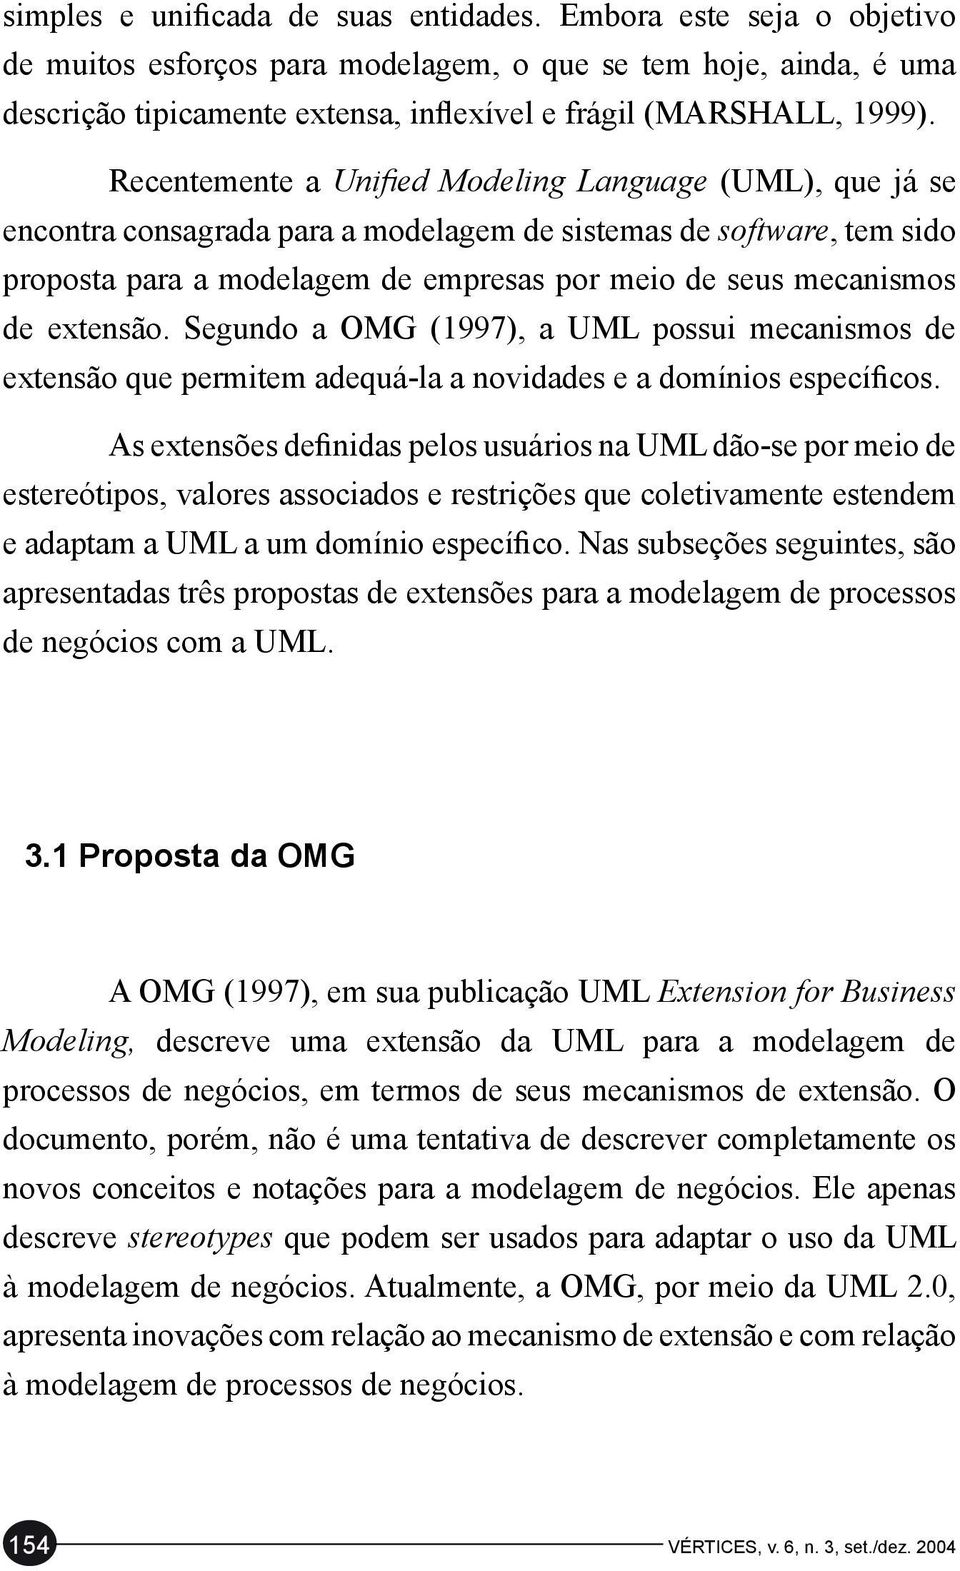 Recentemente a Unified Modeling Language (UML), que já se encontra consagrada para a modelagem de sistemas de software, tem sido proposta para a modelagem de empresas por meio de seus mecanismos de